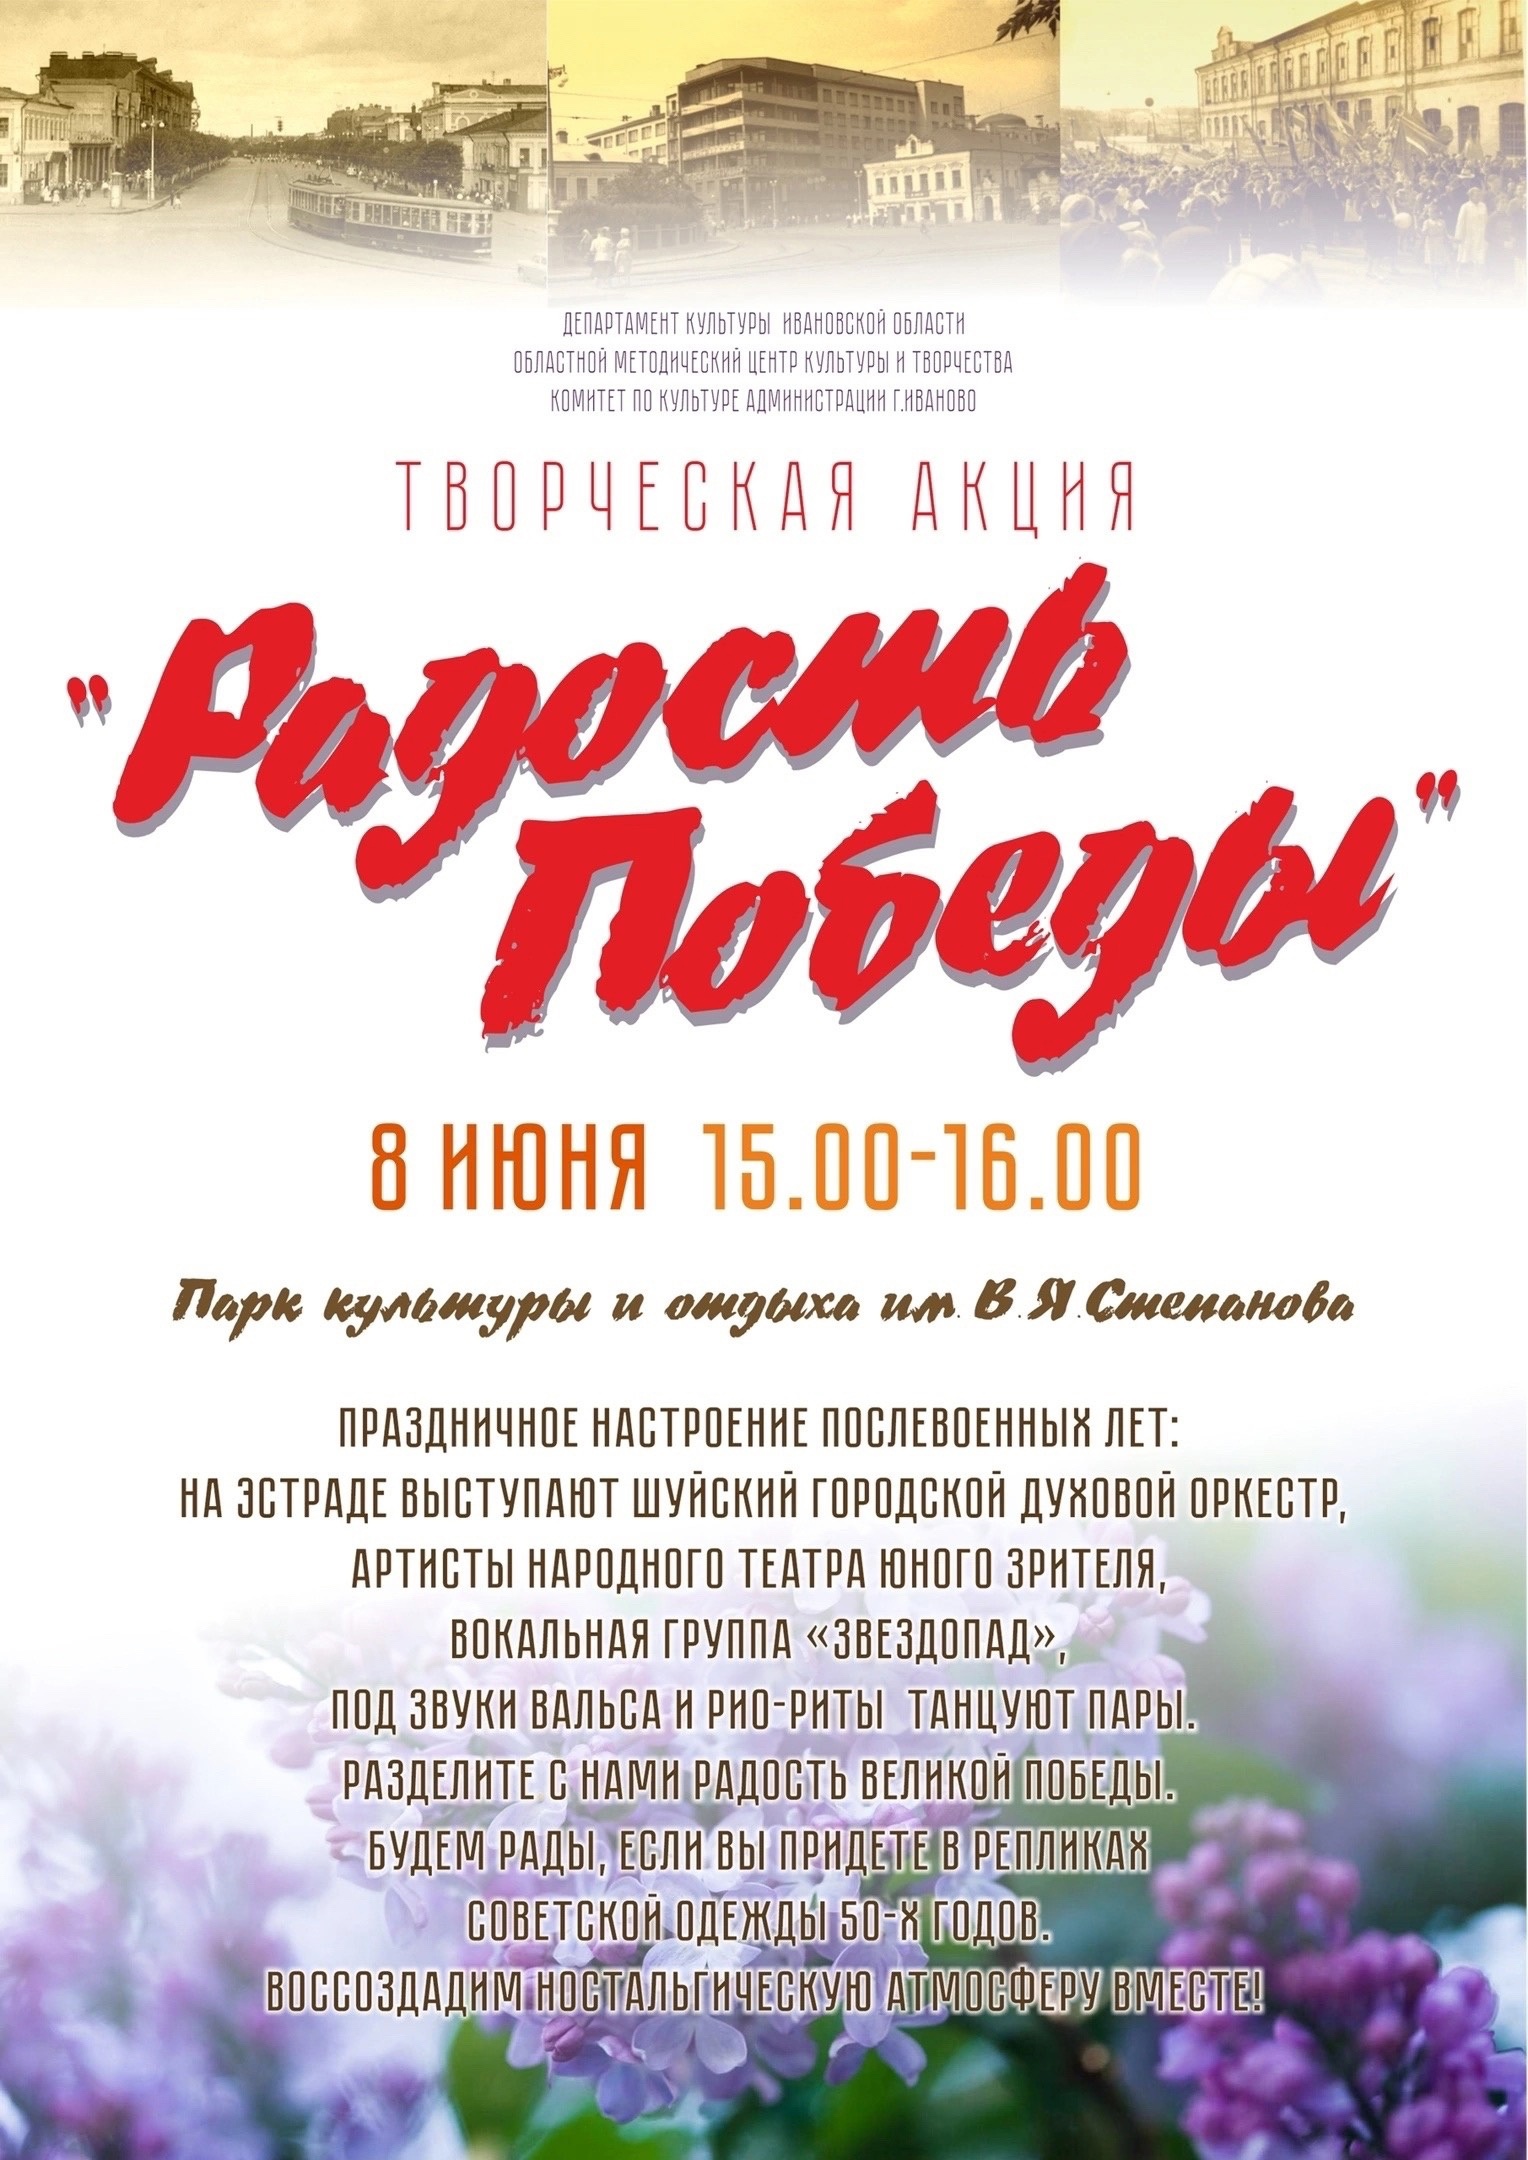 В субботу 8 июня в парке им. В.Я. Степанова пройдет творческая акция «Радость Победы».